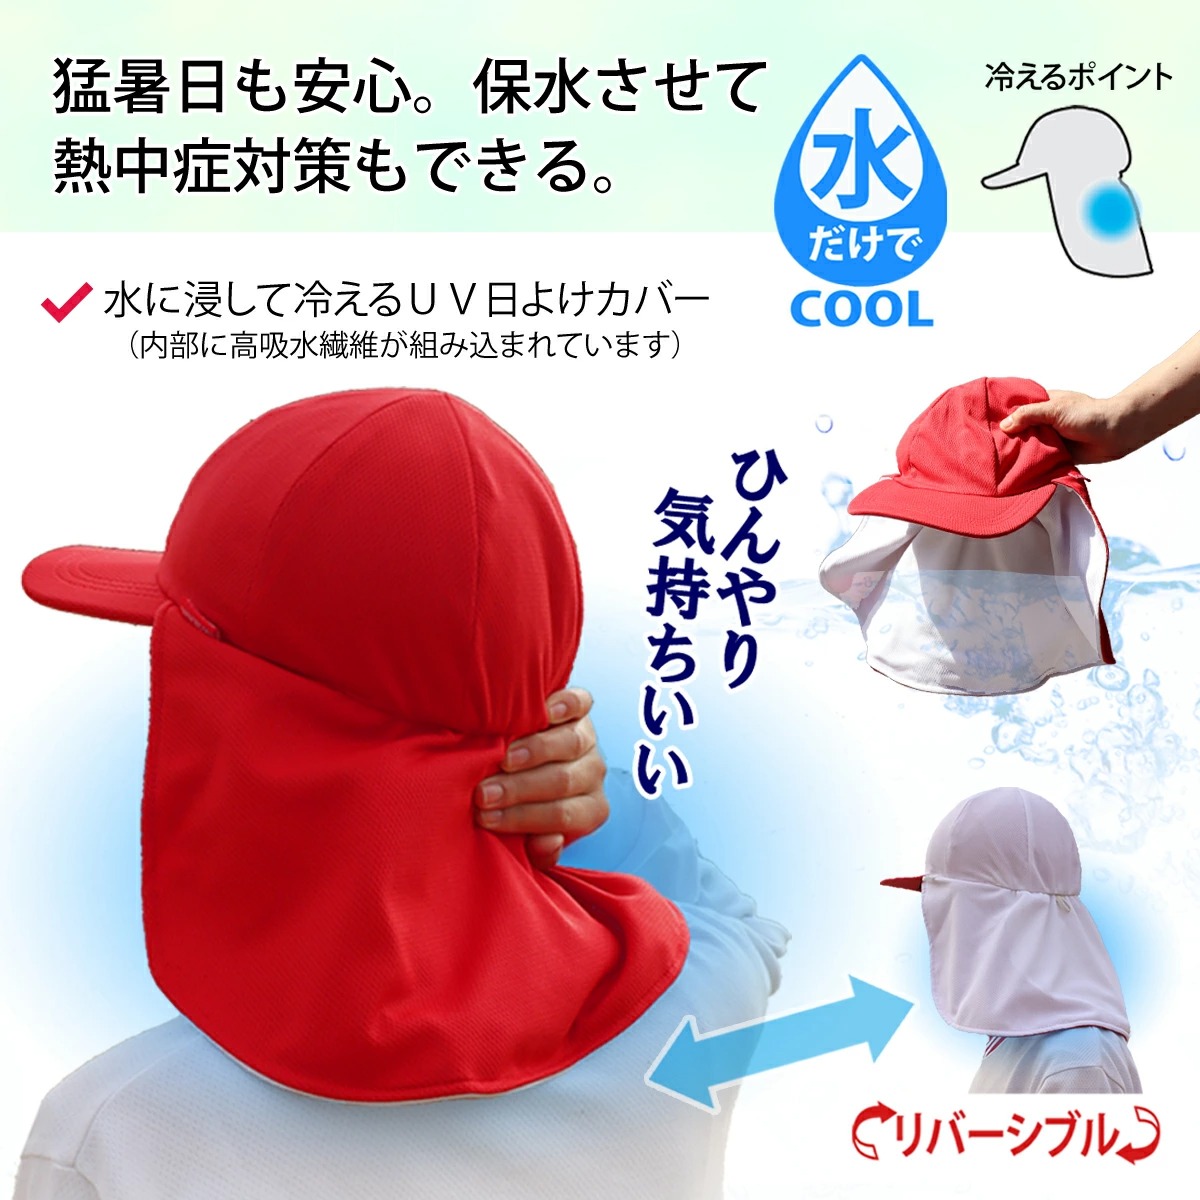 ひんやり気持ちいい,水だけでcool,涼しくなれる,猛暑日も安心,保水させて,熱中症対策,ができる,coolbitクールビットUVフラップ赤白帽子ロングタイプ,熱中症対策帽子